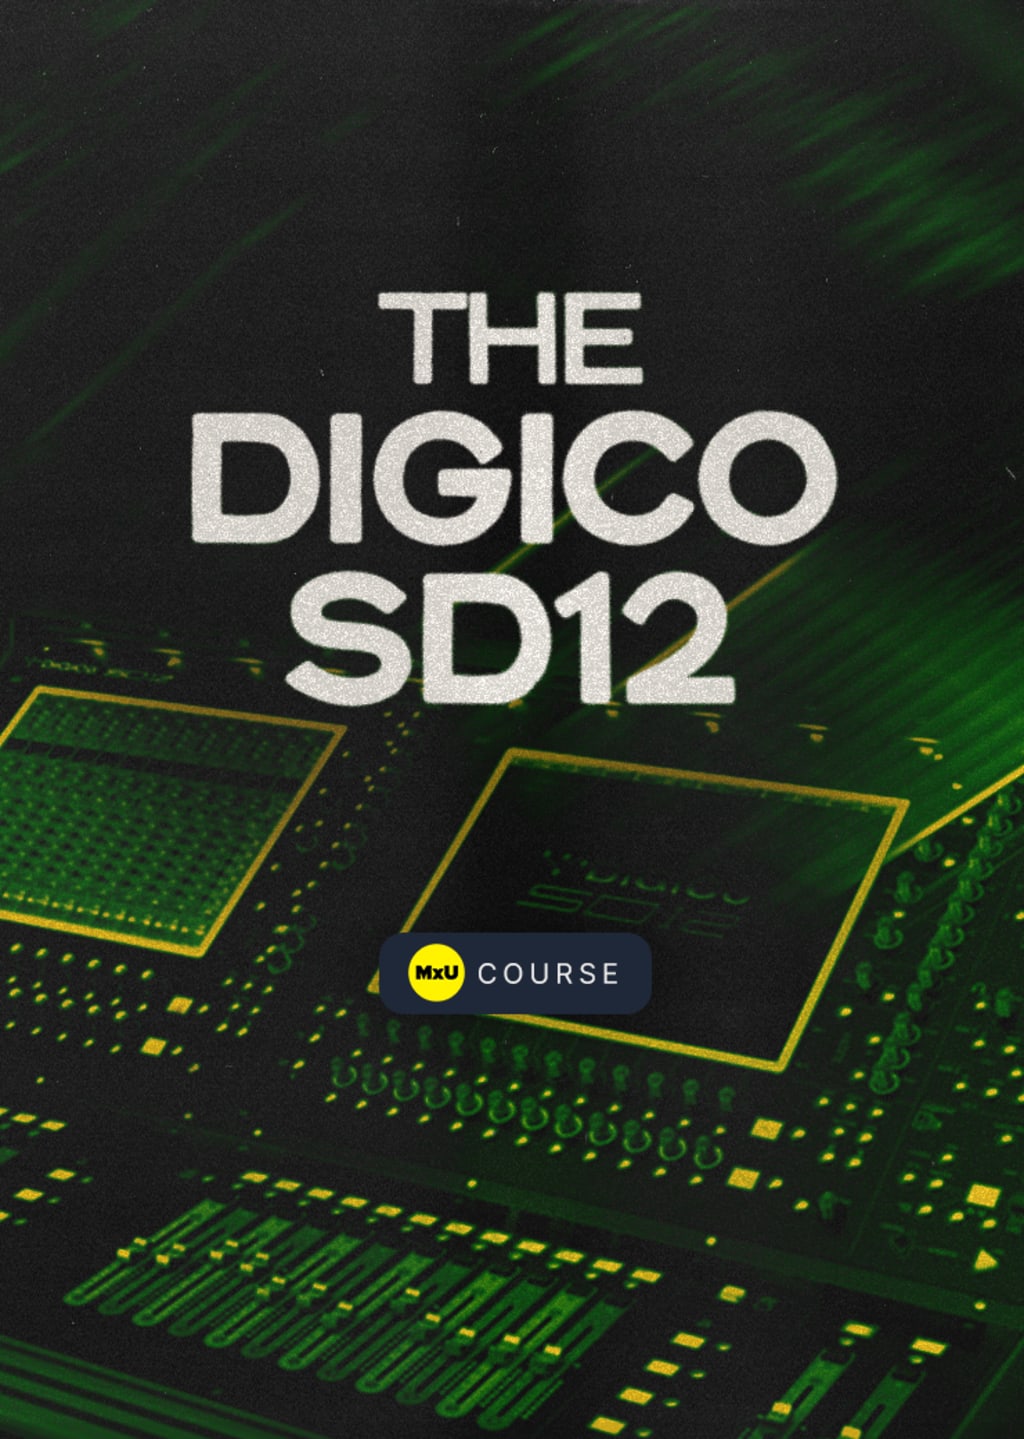 The DiGiCo SD12